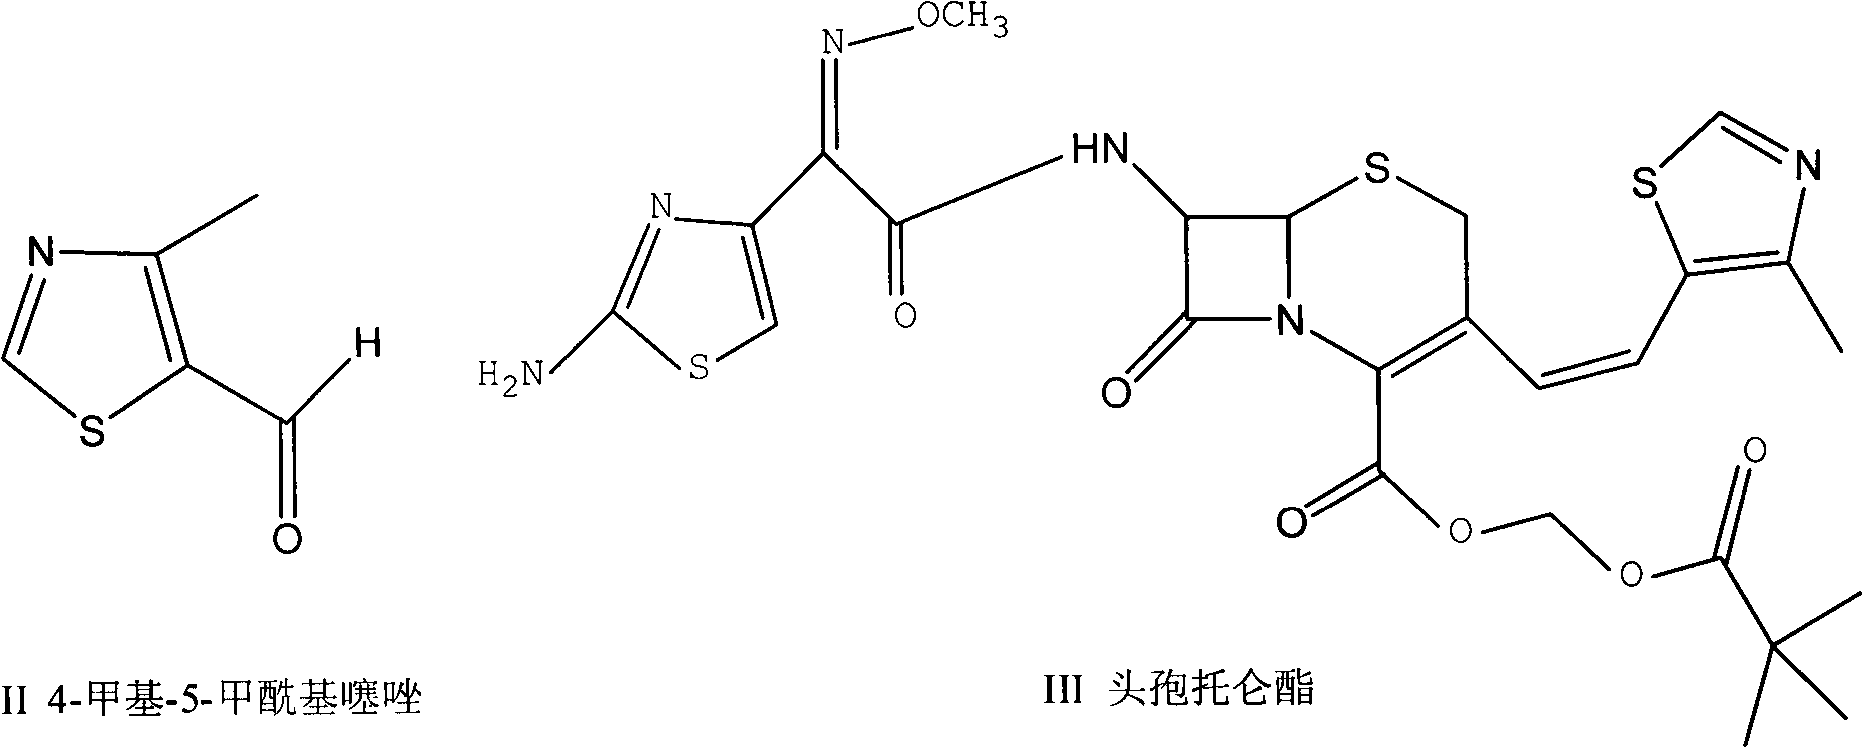 Preparation method of 4-alkyl-5-formoxyl thiazole or 5-formoxyl thiazole